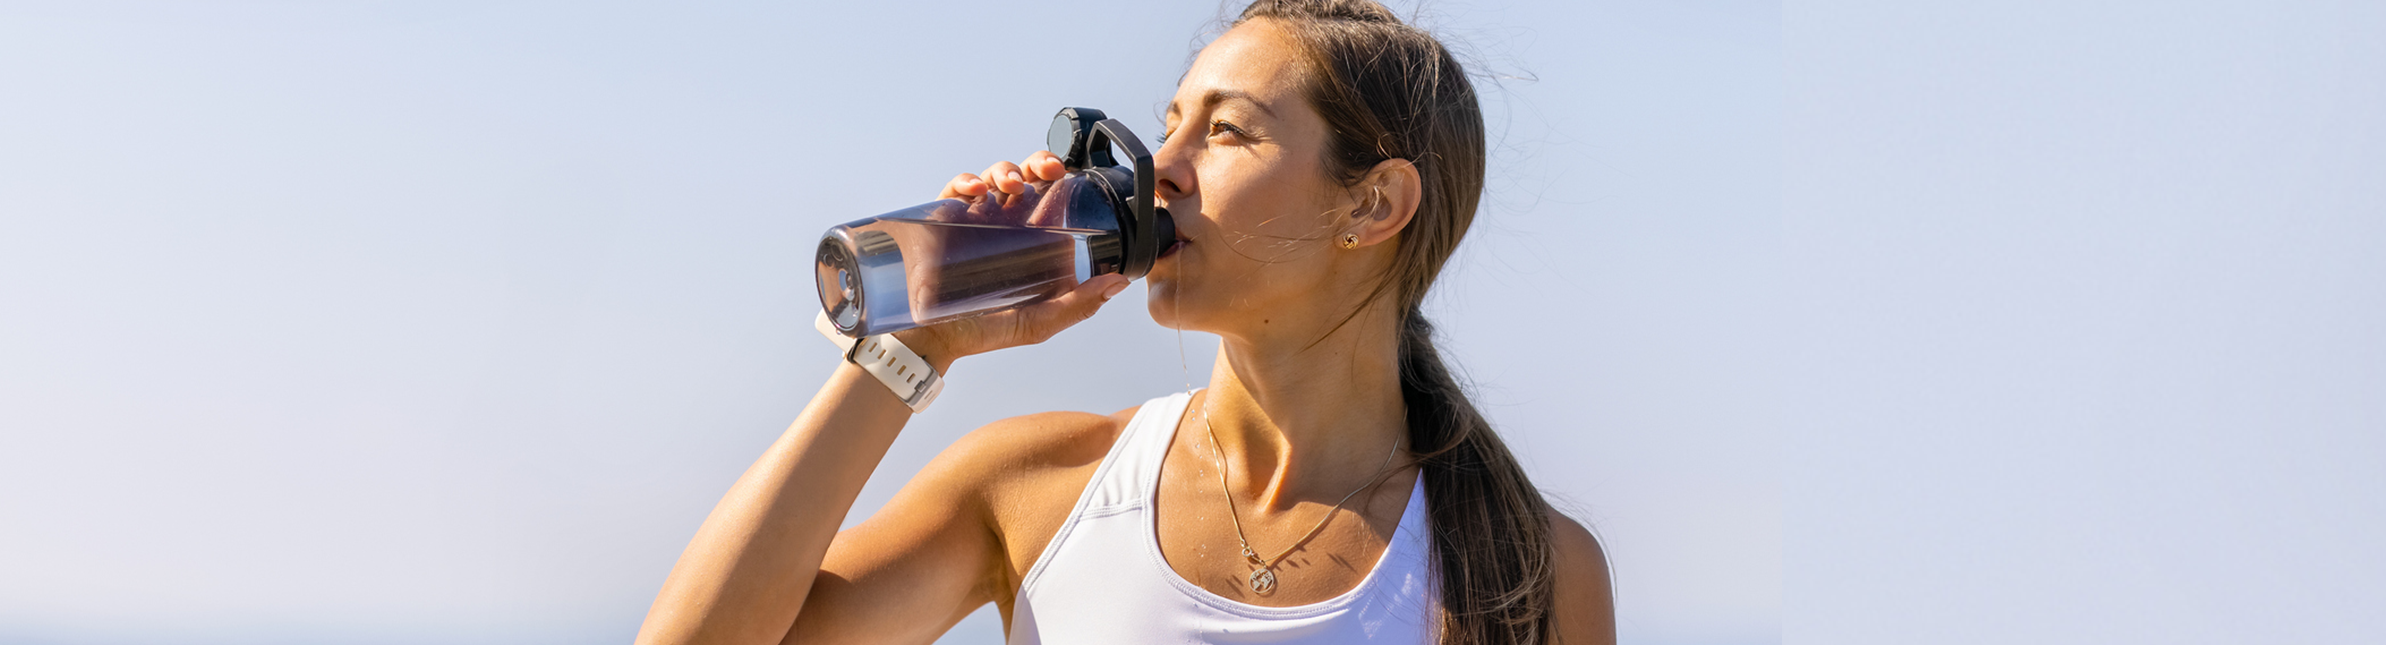 hidratacion-intensa-ejercicio-deshidratacion-sudor-calor-agua